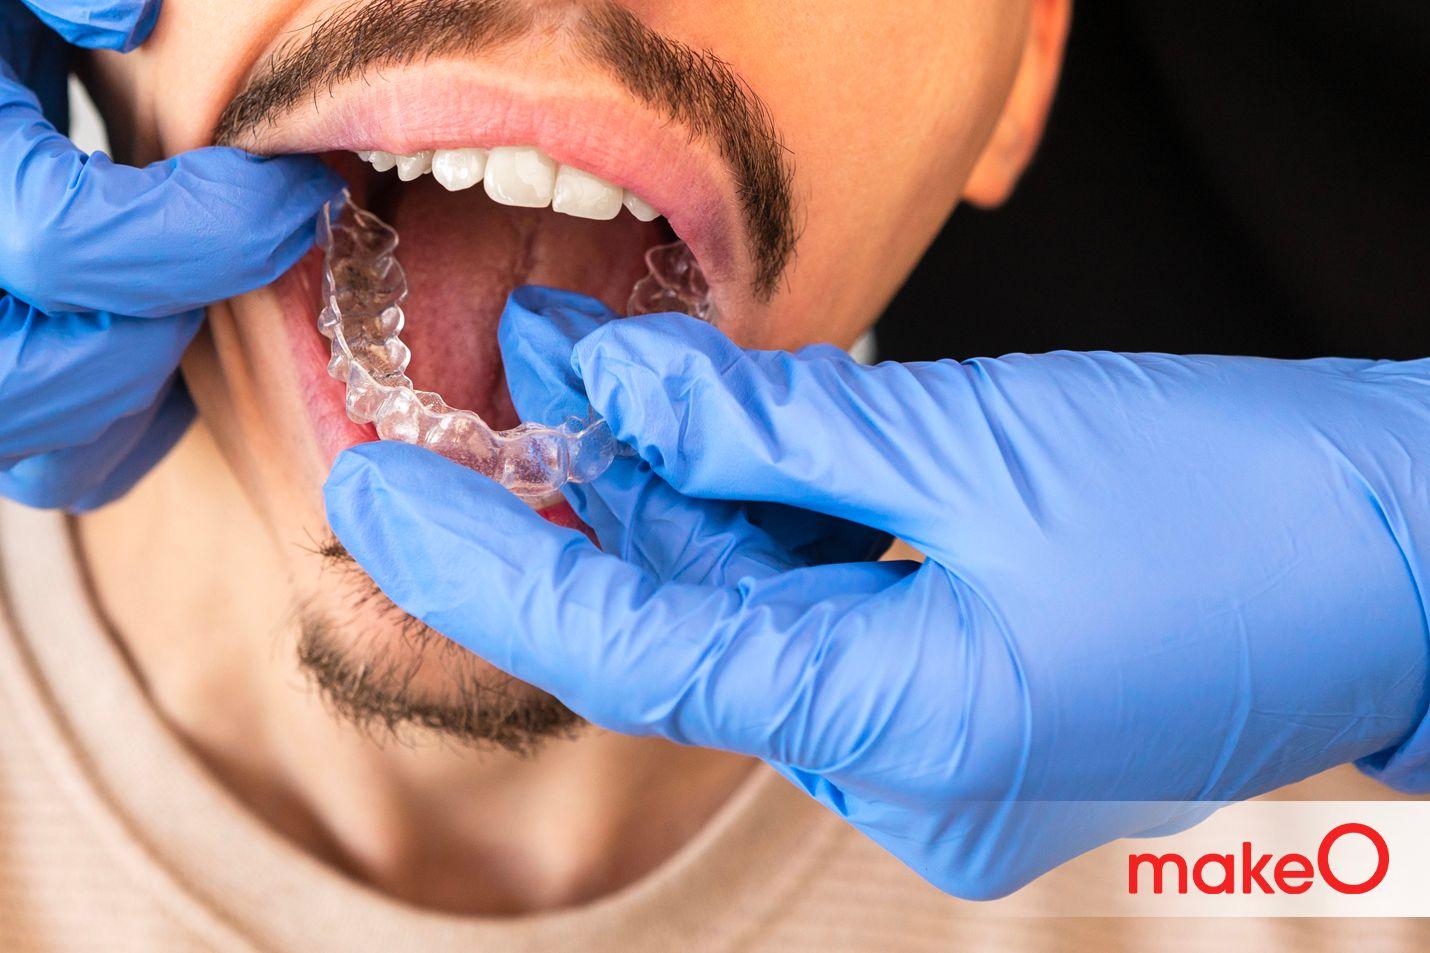 Misaligned teeth problem 